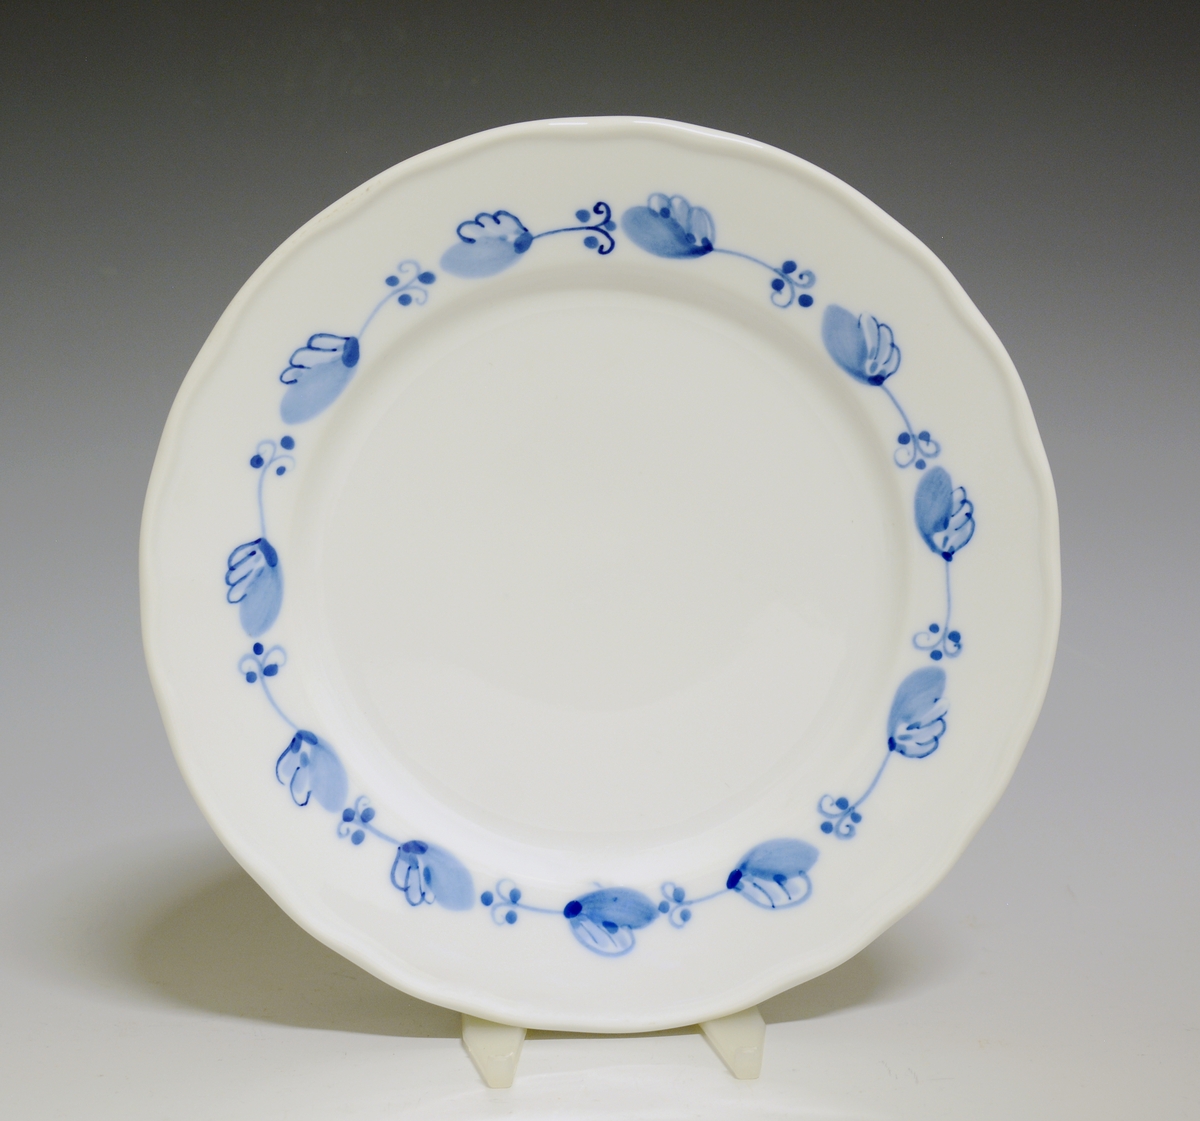 Liten tallerken av porselen. Hvit glasur. Håndmalt underglasurdekor i blått på fanen 
Modell: Victoria, 1800
